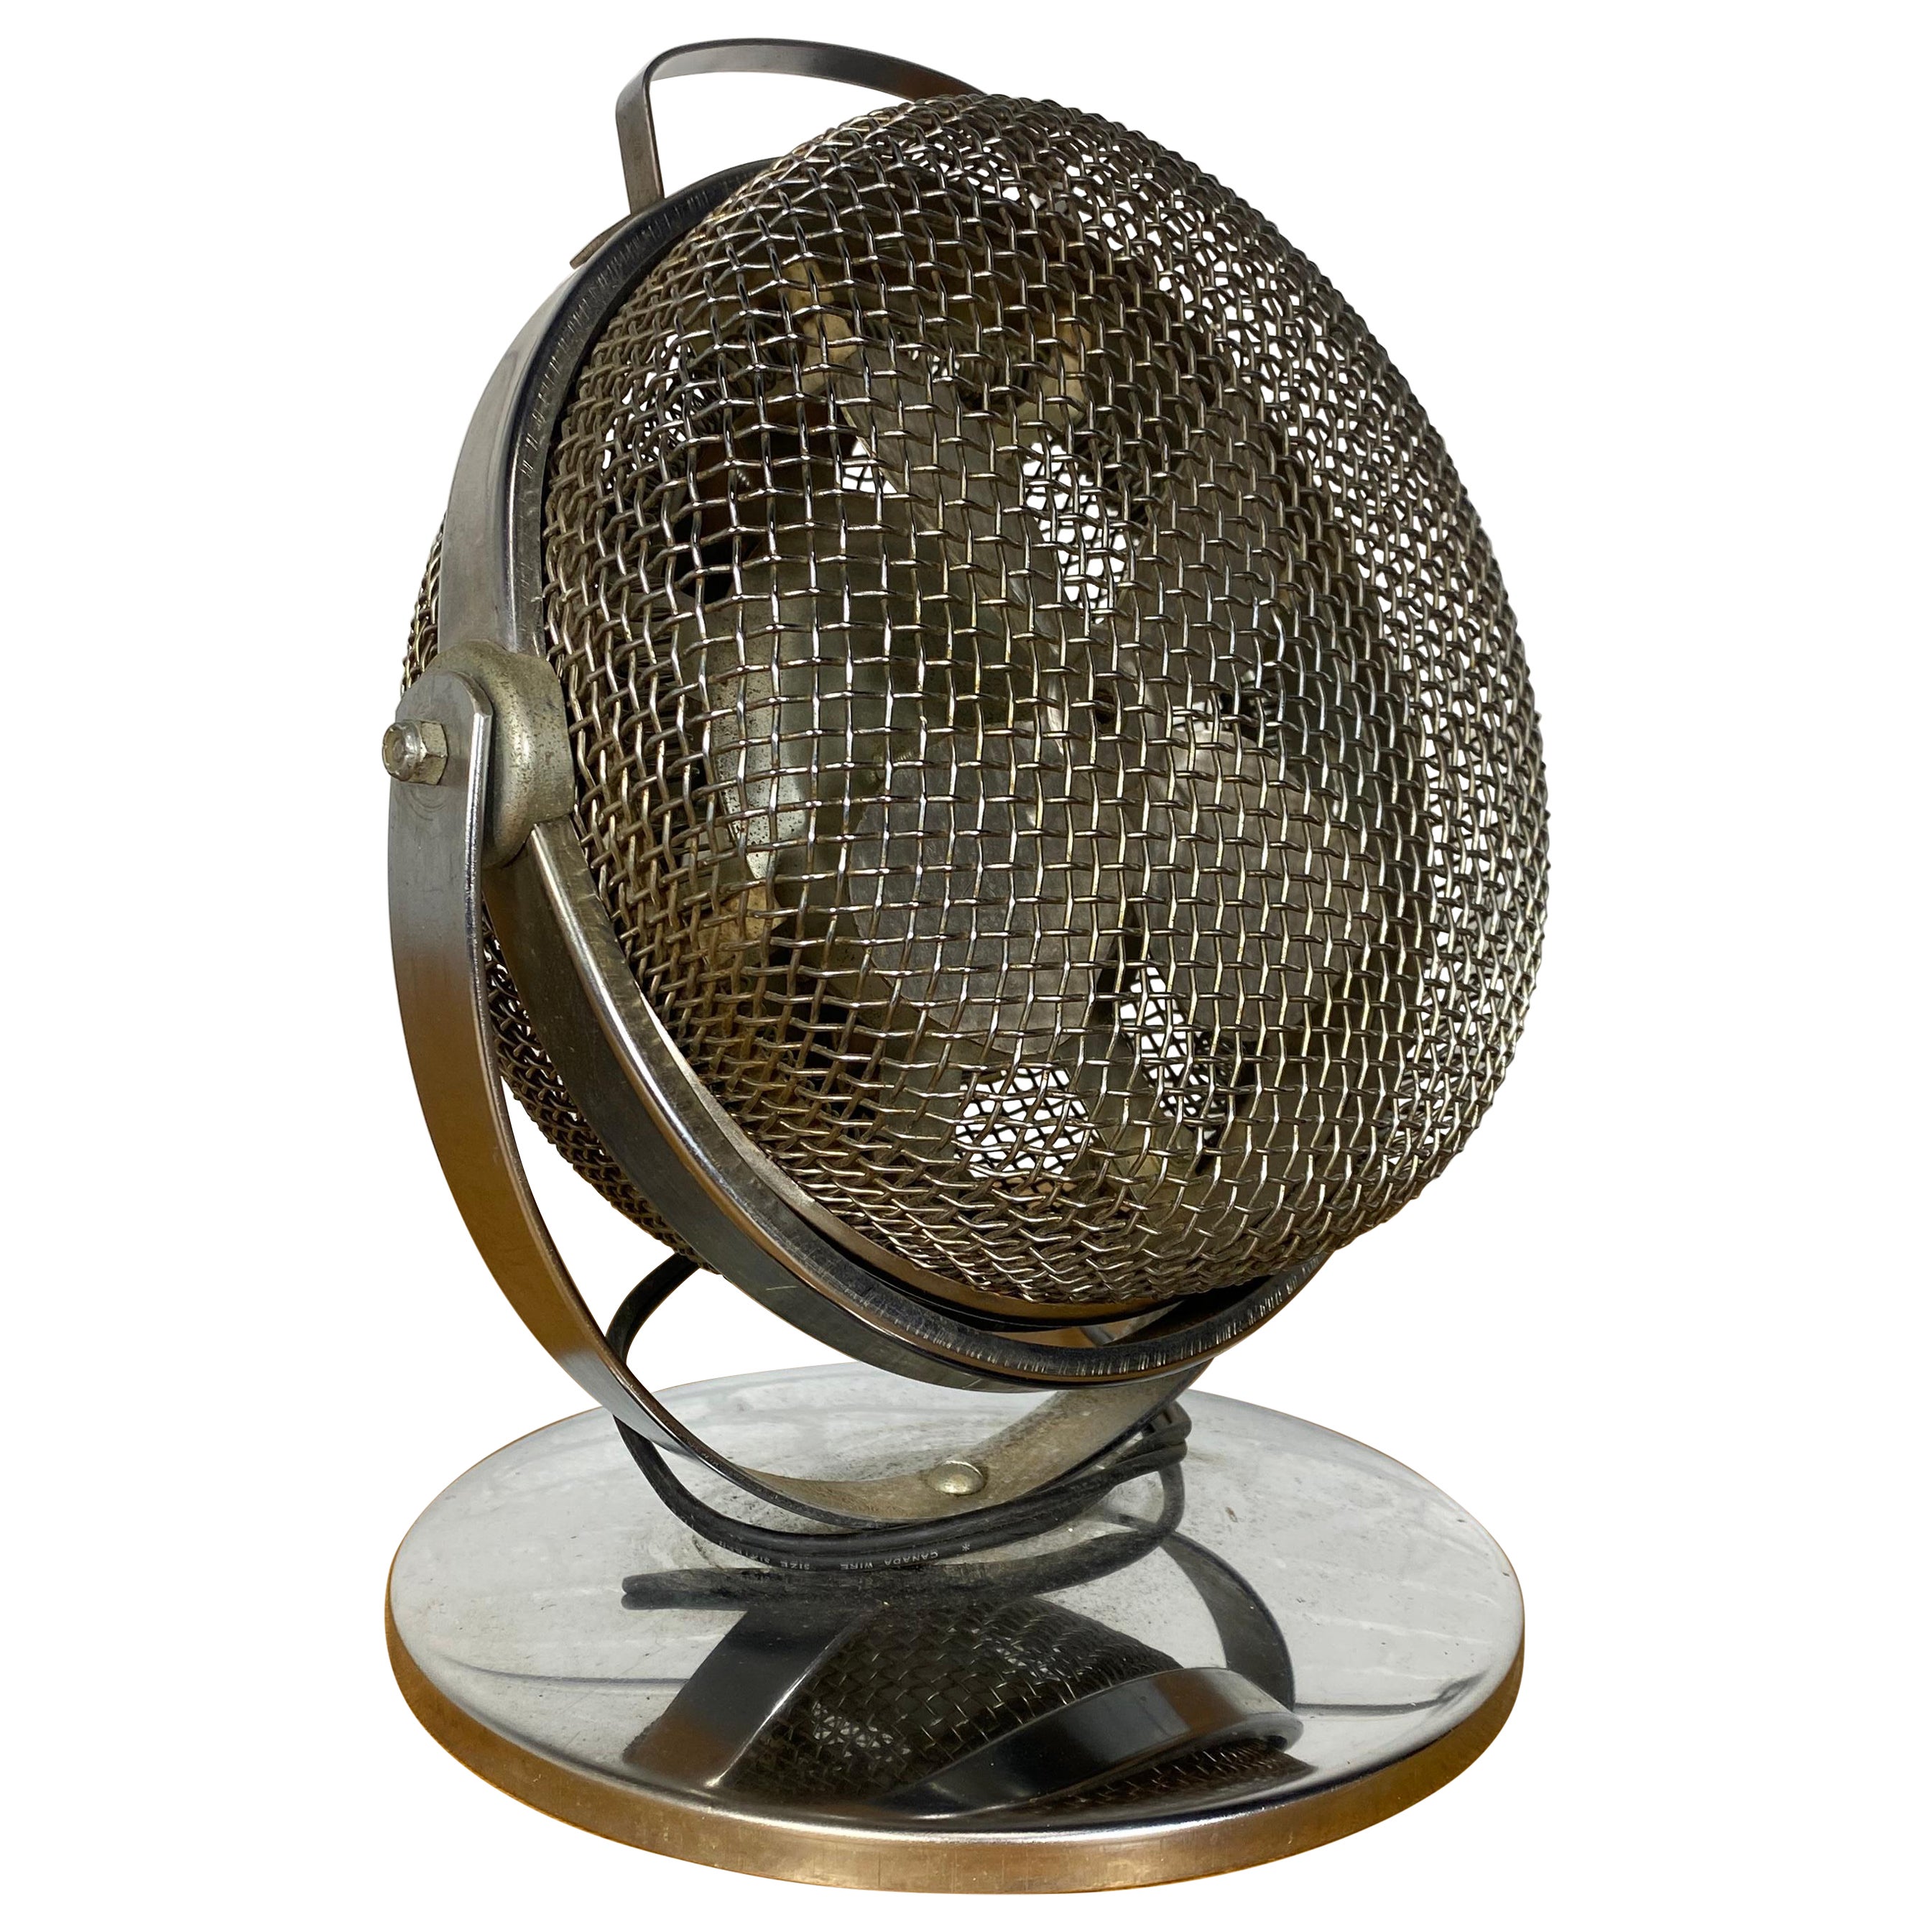 Machine Age / Art Deco Electric Fan / Heater by ORLI.